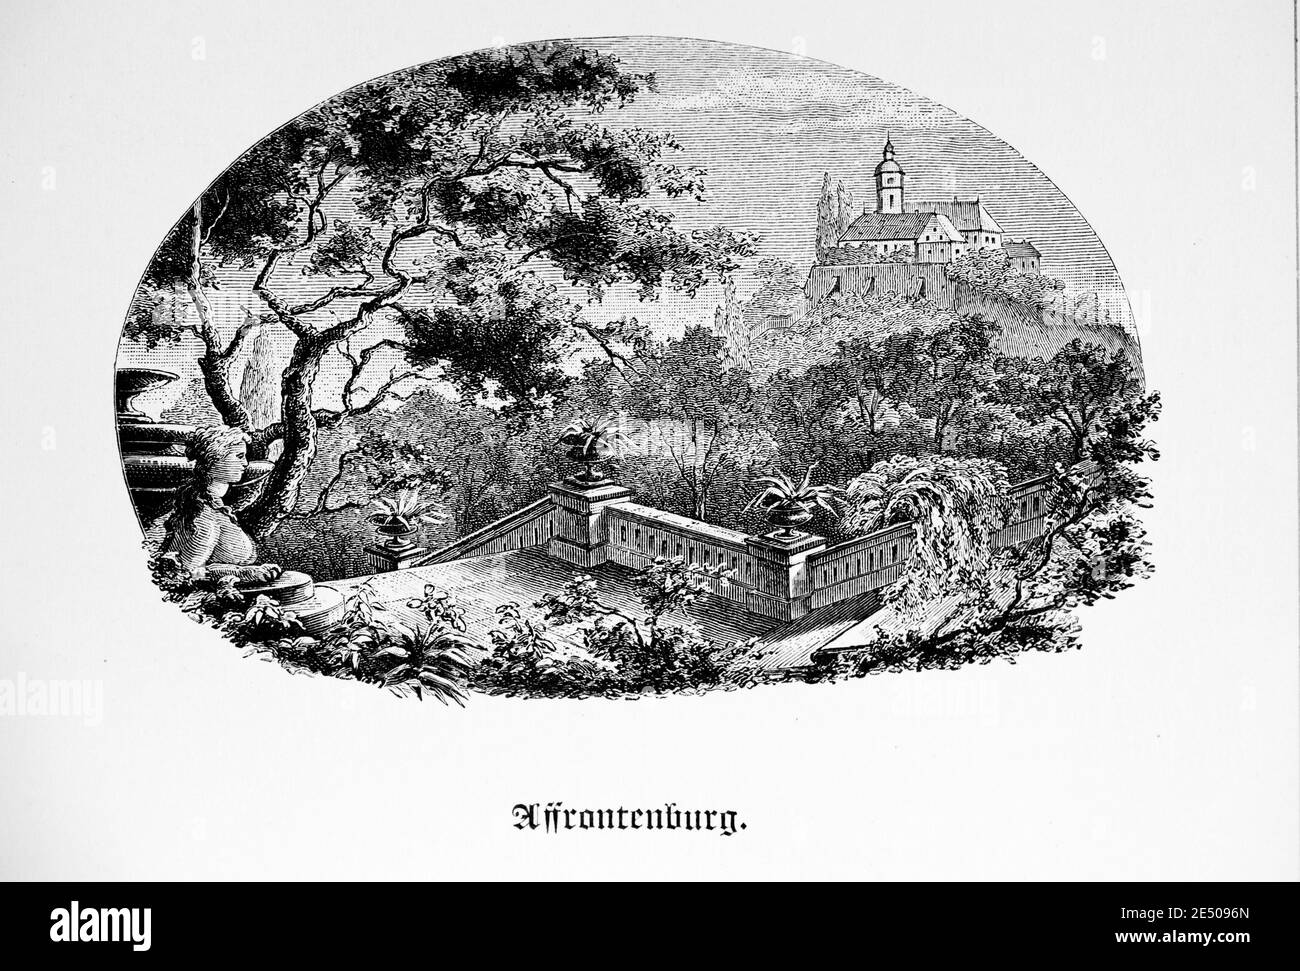 Ilustración del poema artístico de Heine´s Affrontenburg sobre un castillo y sus jardines, poeta alemán Heinrich Heine, colección de poemas Romancero, 1880 Foto de stock